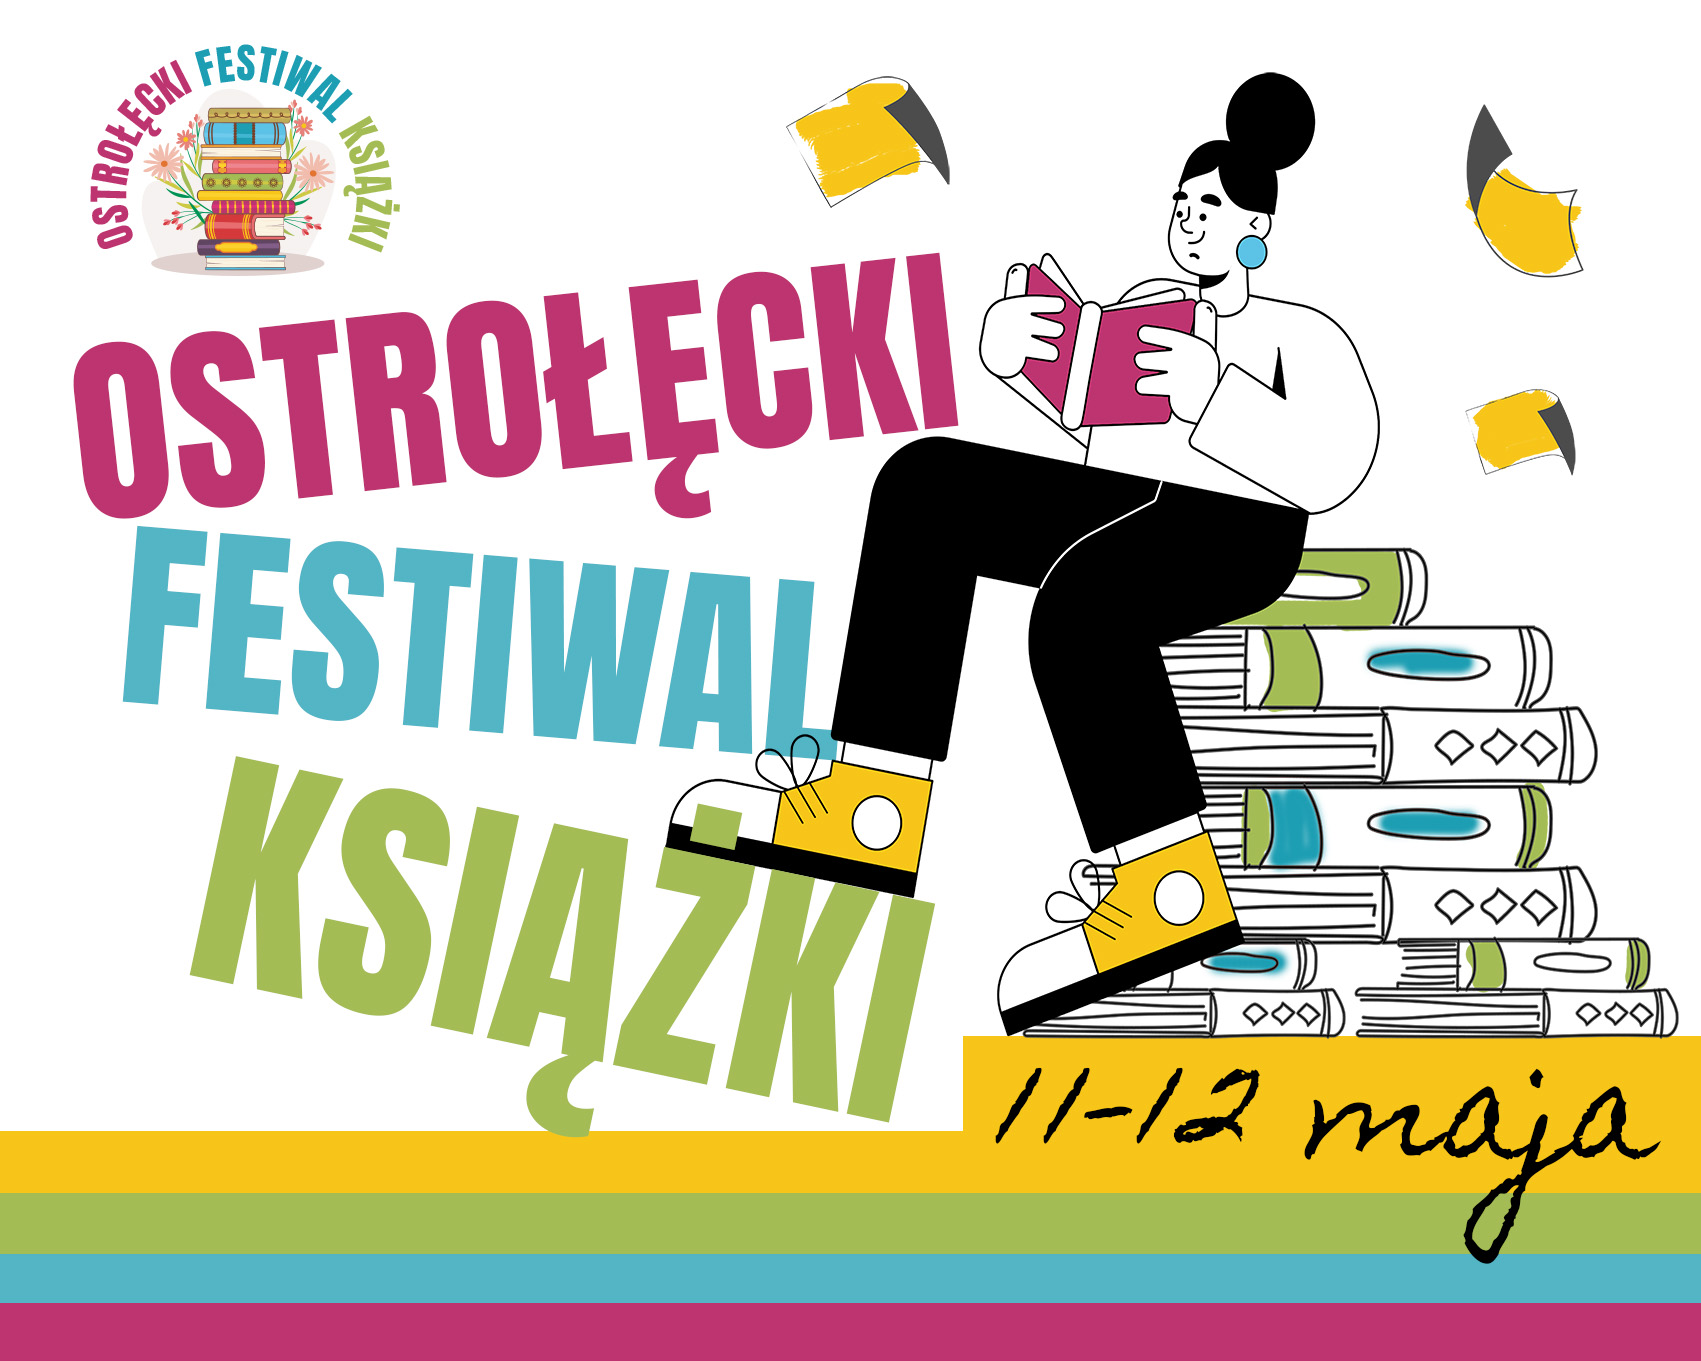 aktualność: Ostrołęcki Festiwal Książki już w weekend